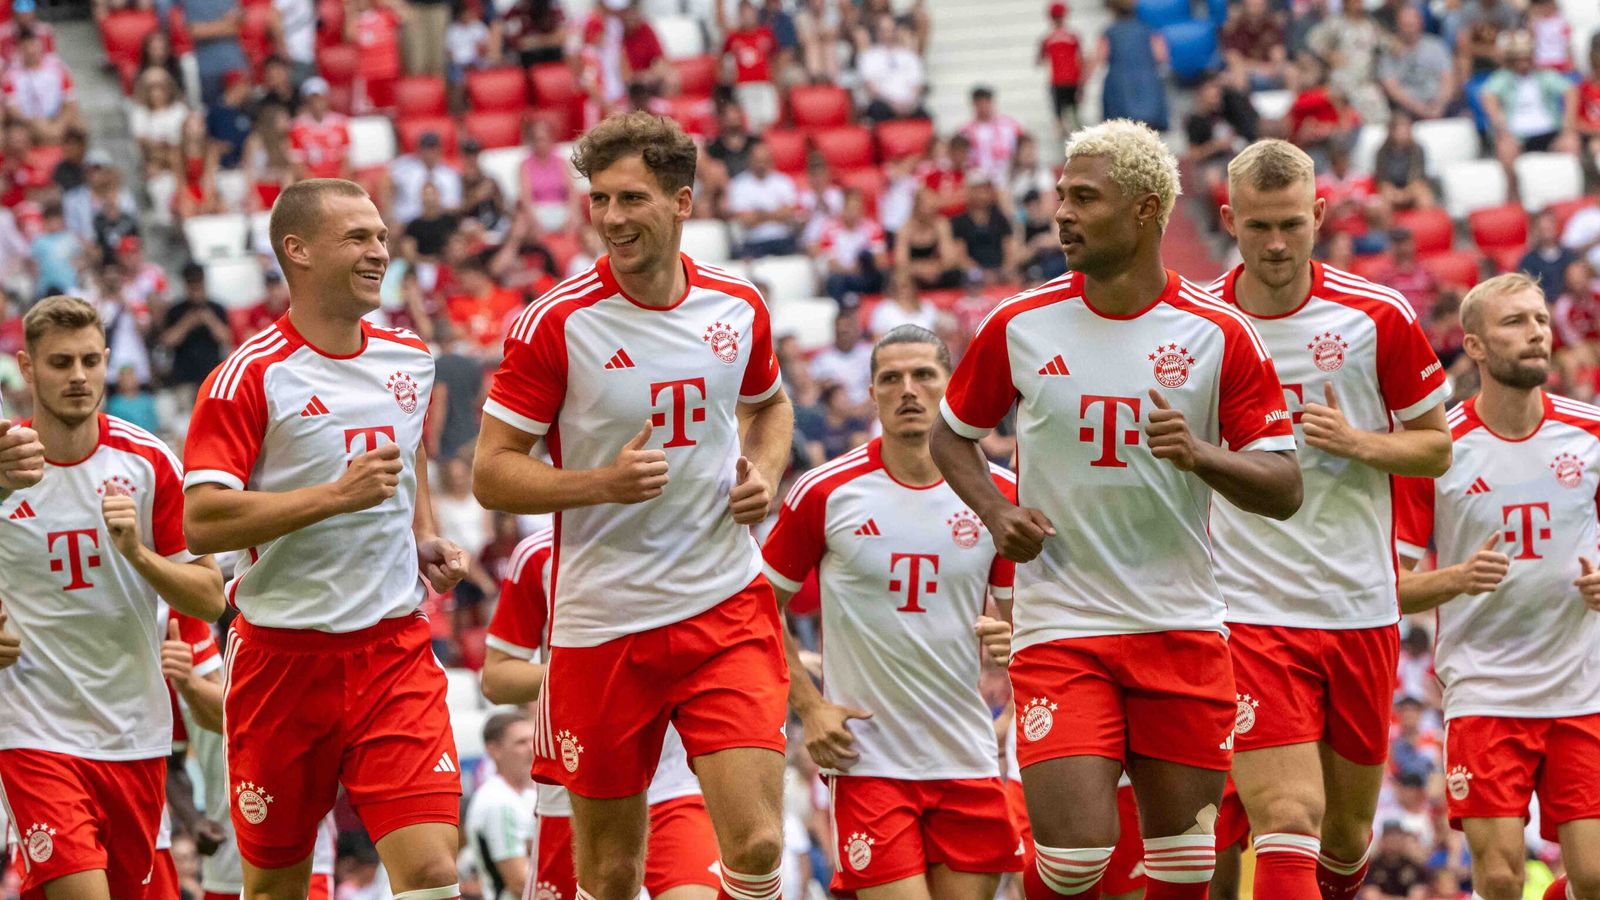 FC Bayern: Teampräsentation mit einigen Fragezeichen